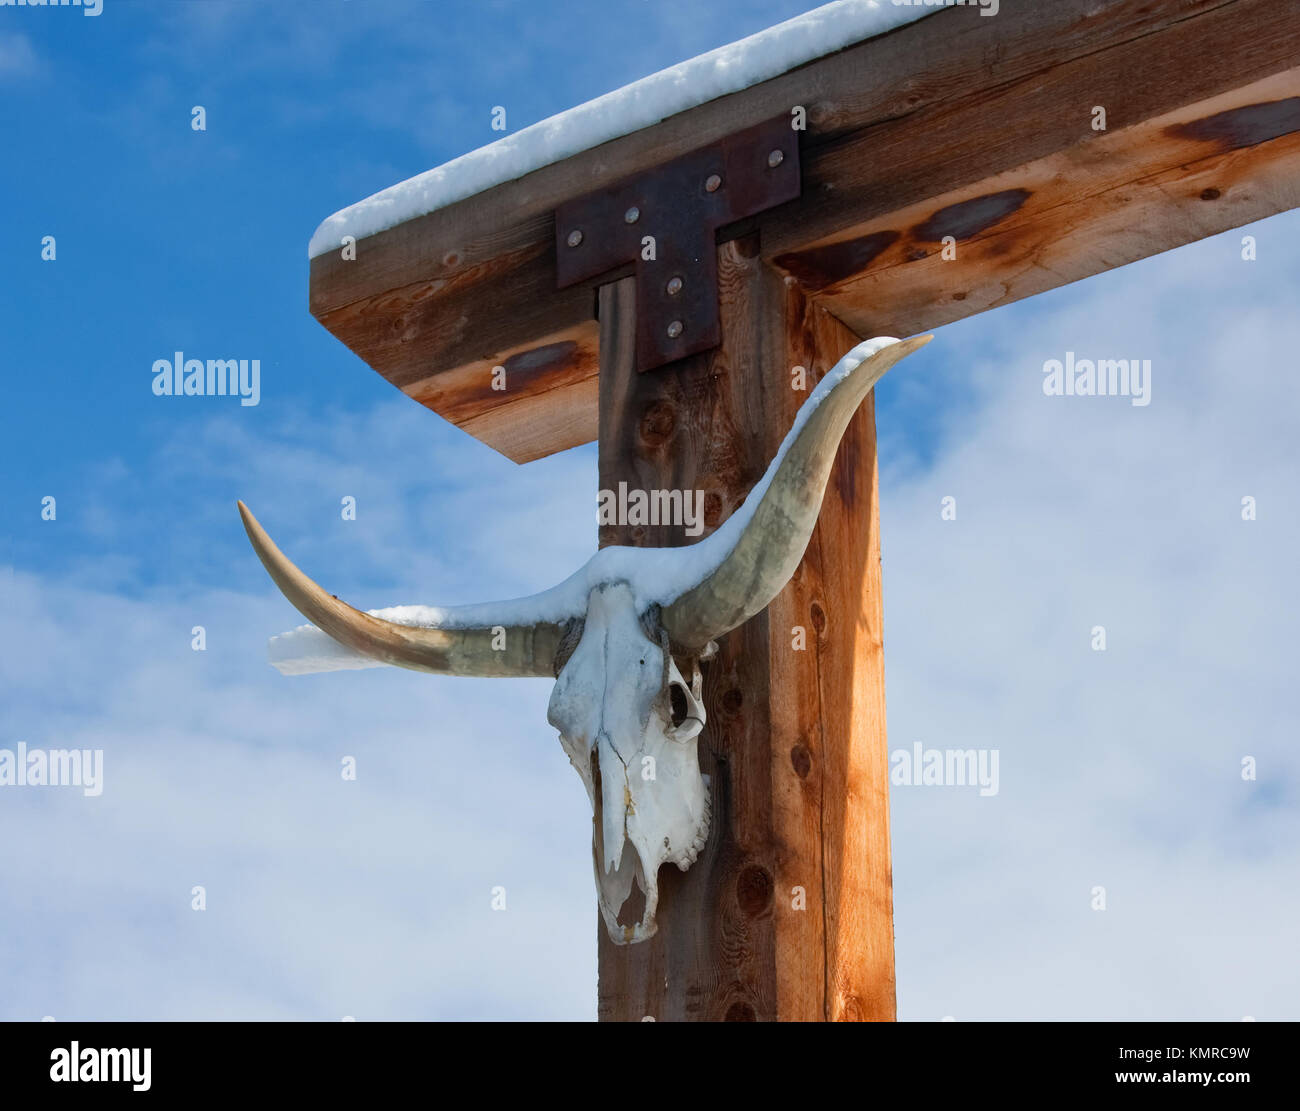 La nieve fresca en la puerta del Rancho Texas Longhon cráneo Foto de stock